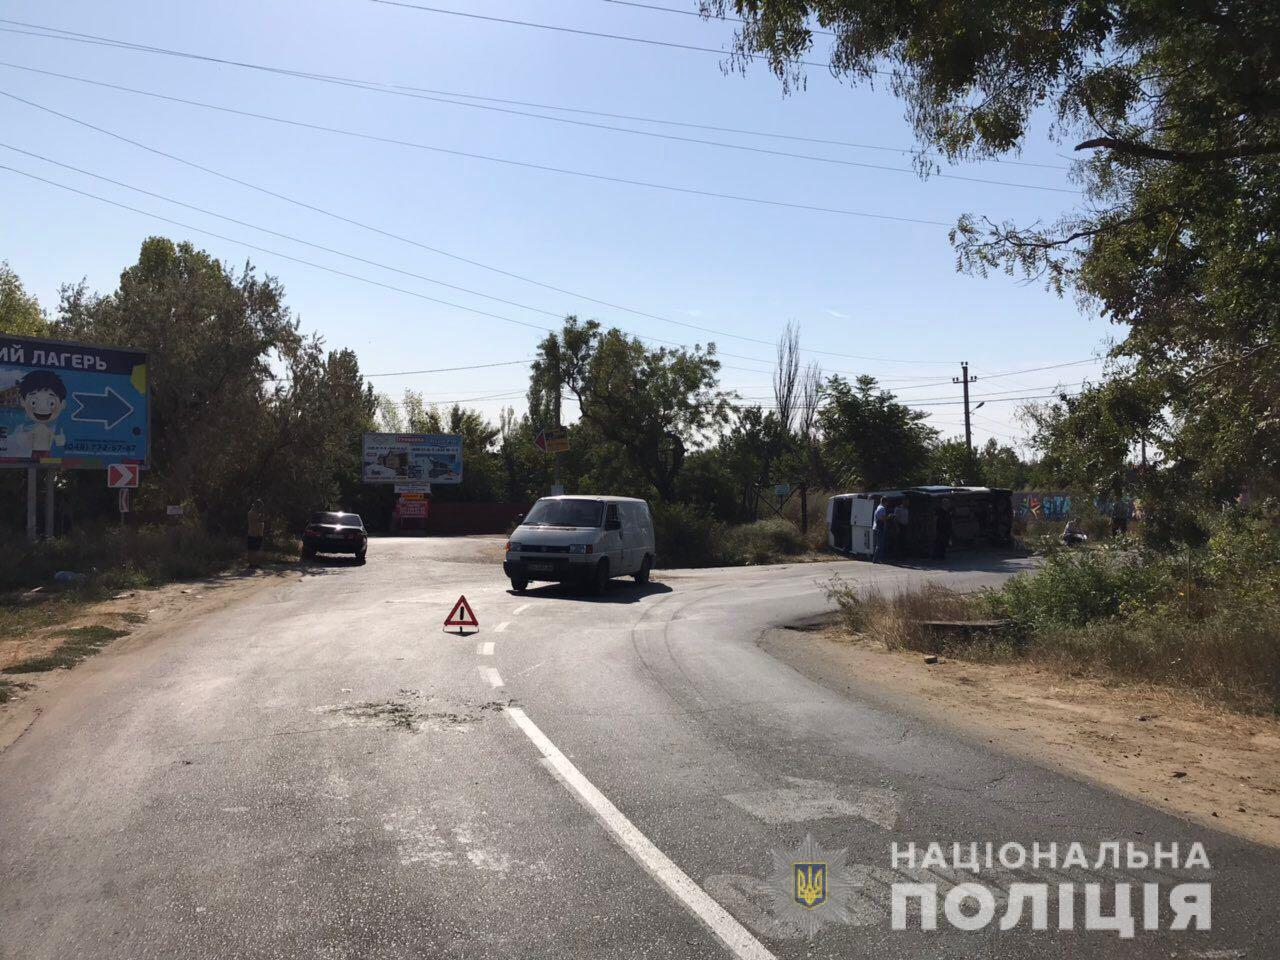 Микроавтобус с пассажирами, которые ехали на отдых в Затоку, перевернулся возле Грибовки. 11 человек пострадали